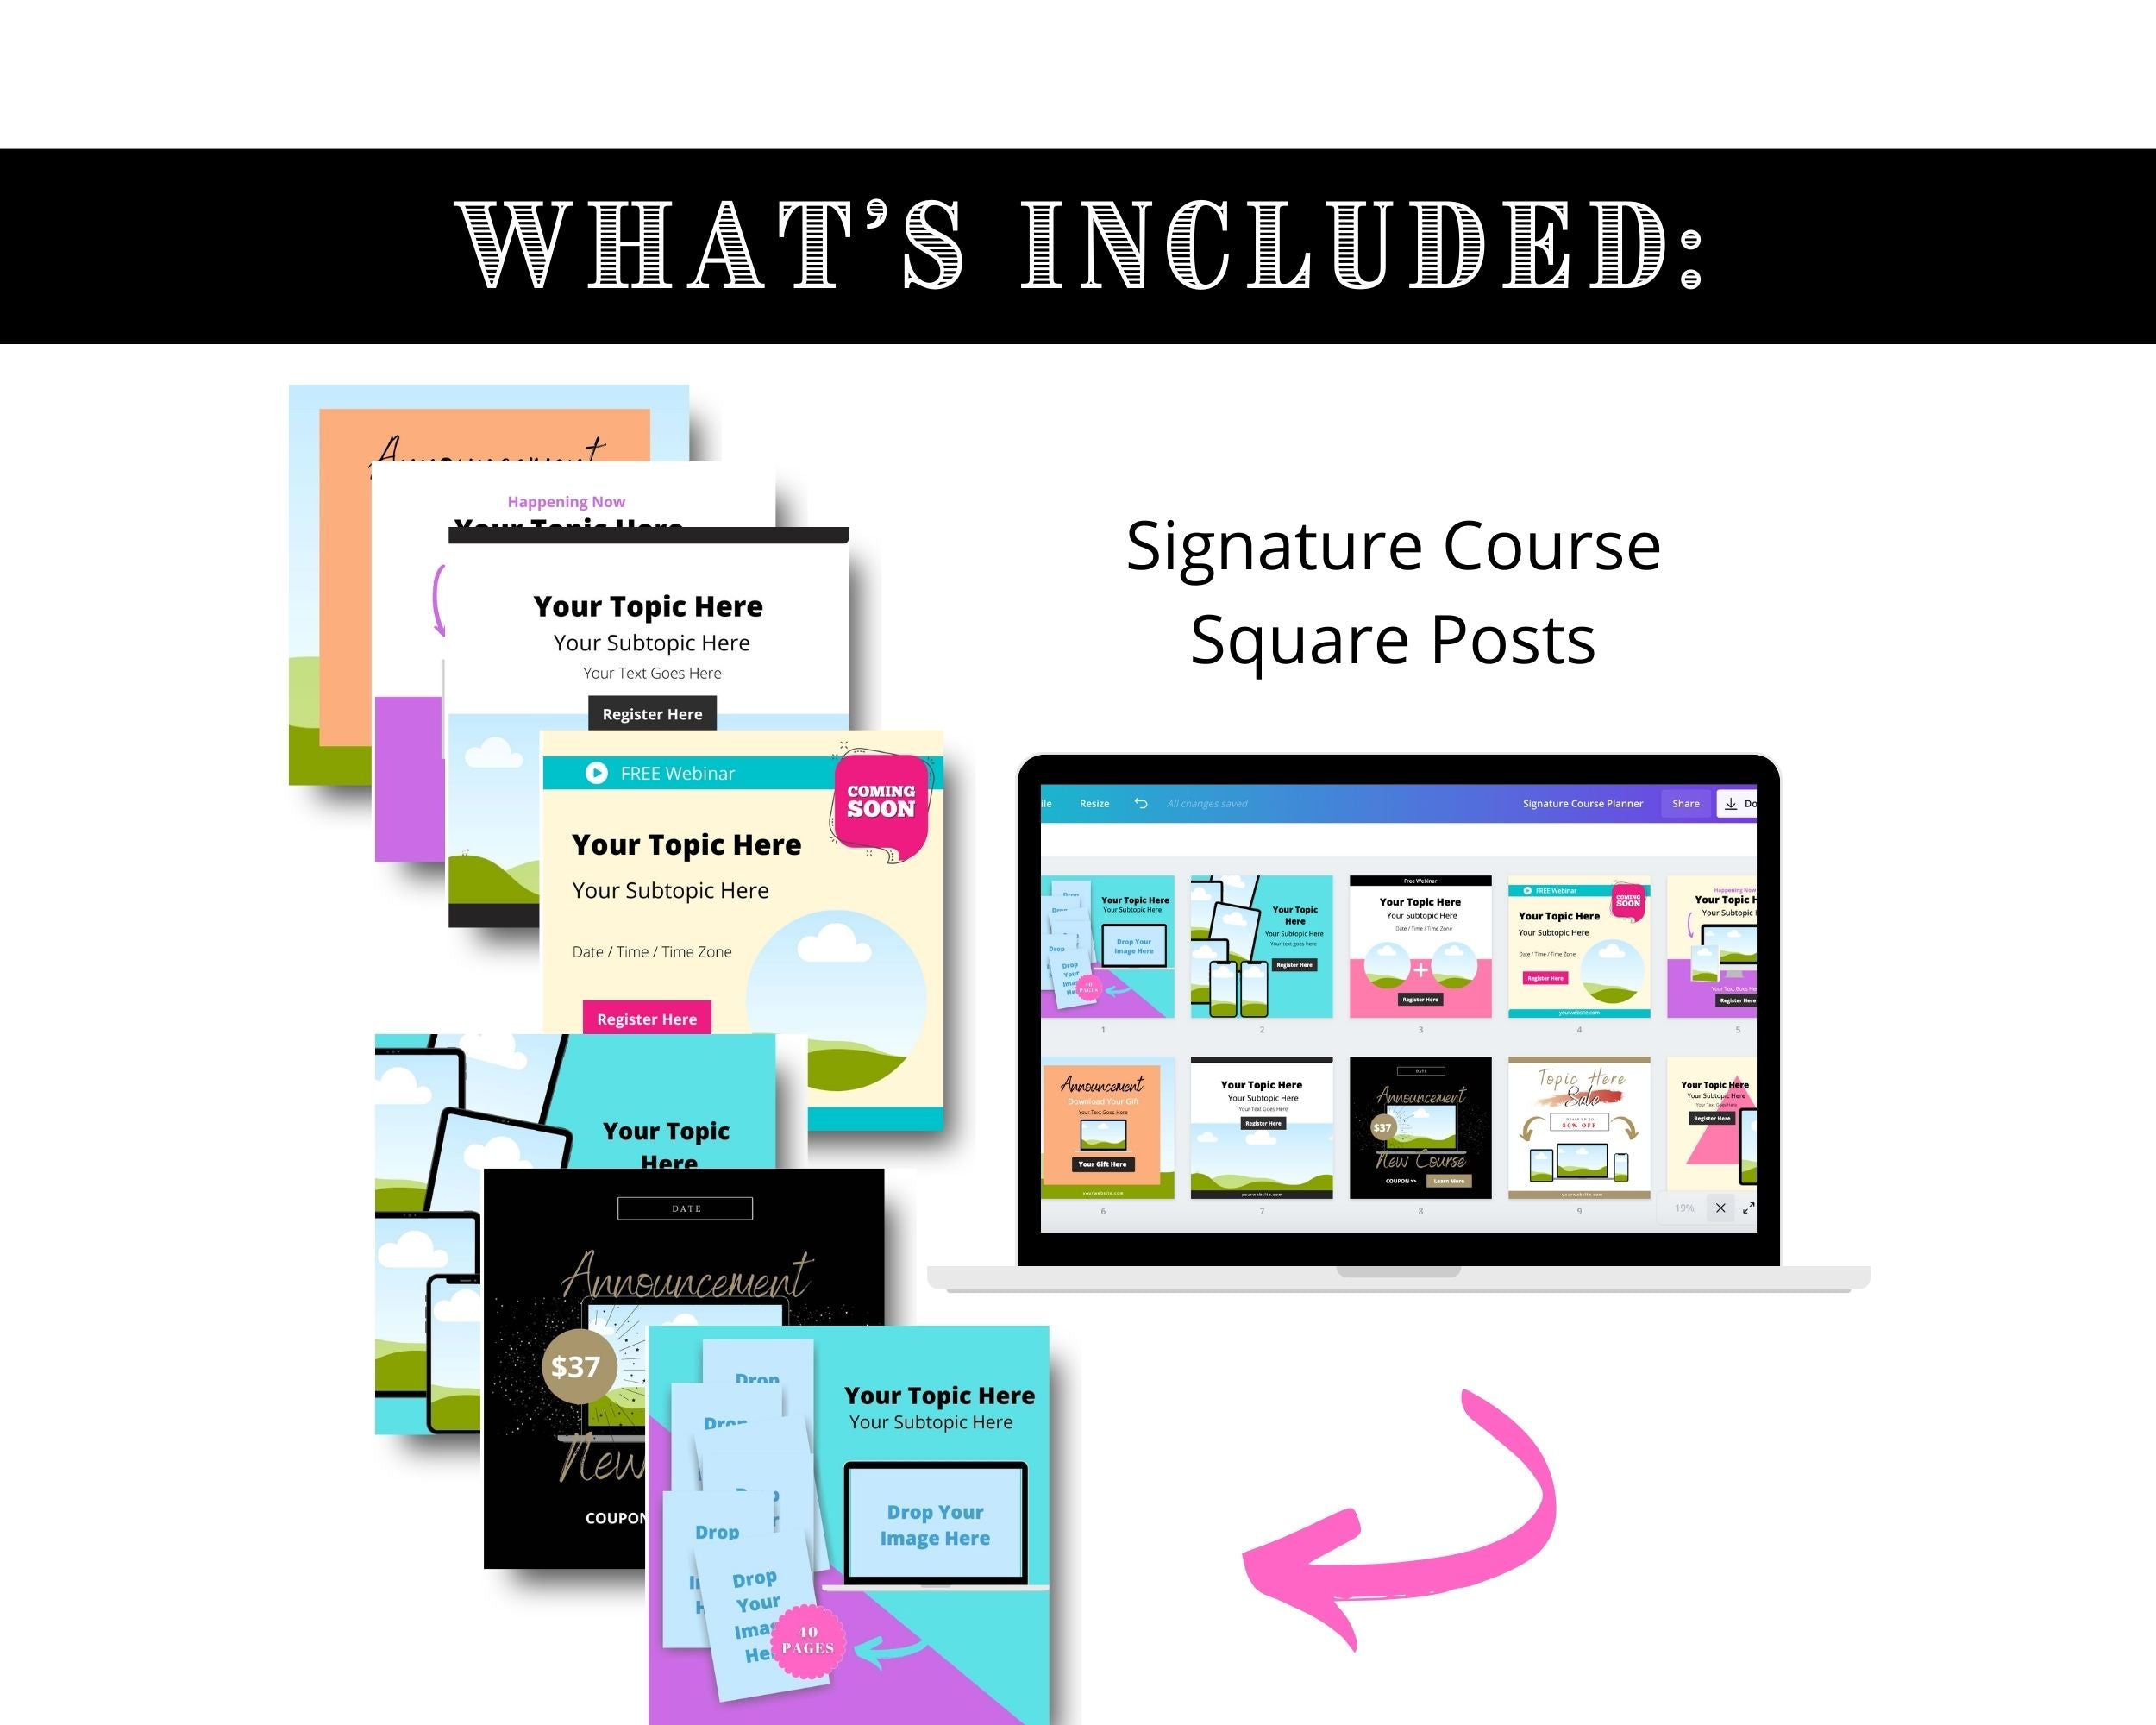 Signature Course Planner | Course Creation & Promotion Slide Deck | Idea to Launch Signature Course Bundle